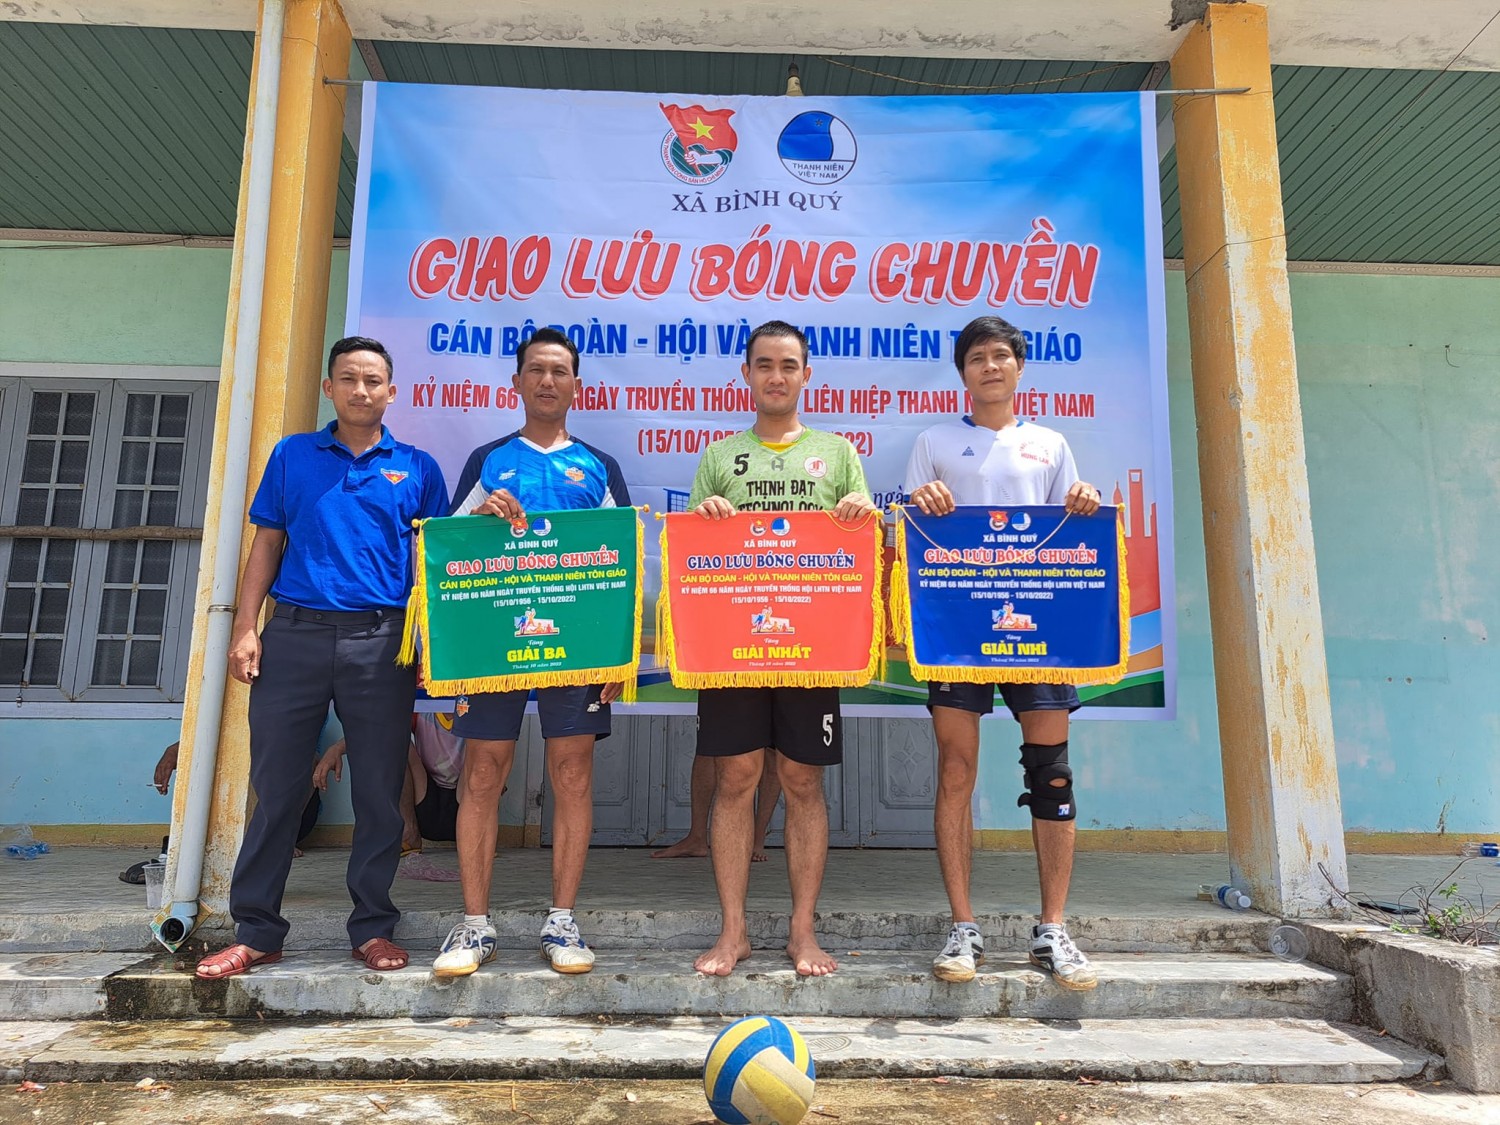 Đoàn xã Bình Quý tổ chức giao lưu bóng chuyền kỷ niệm 66 năm ngày truyền thống Hội LHTN Việt Nam